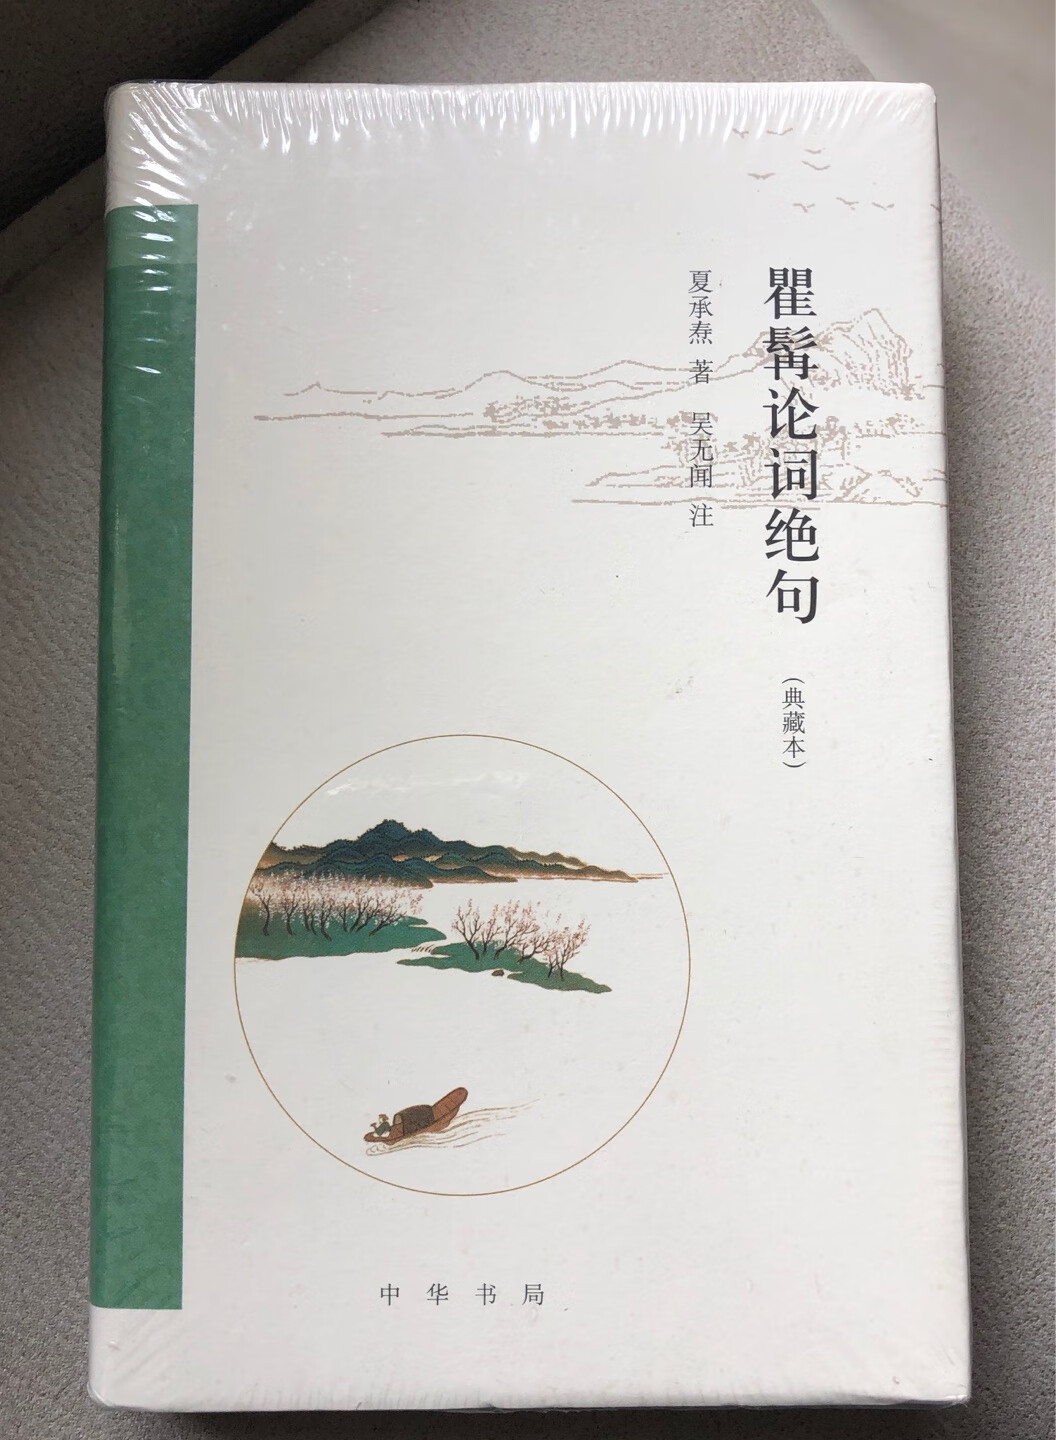 中华书局出版的中国文化系列丛书，装帧好，内容也不错，收藏了